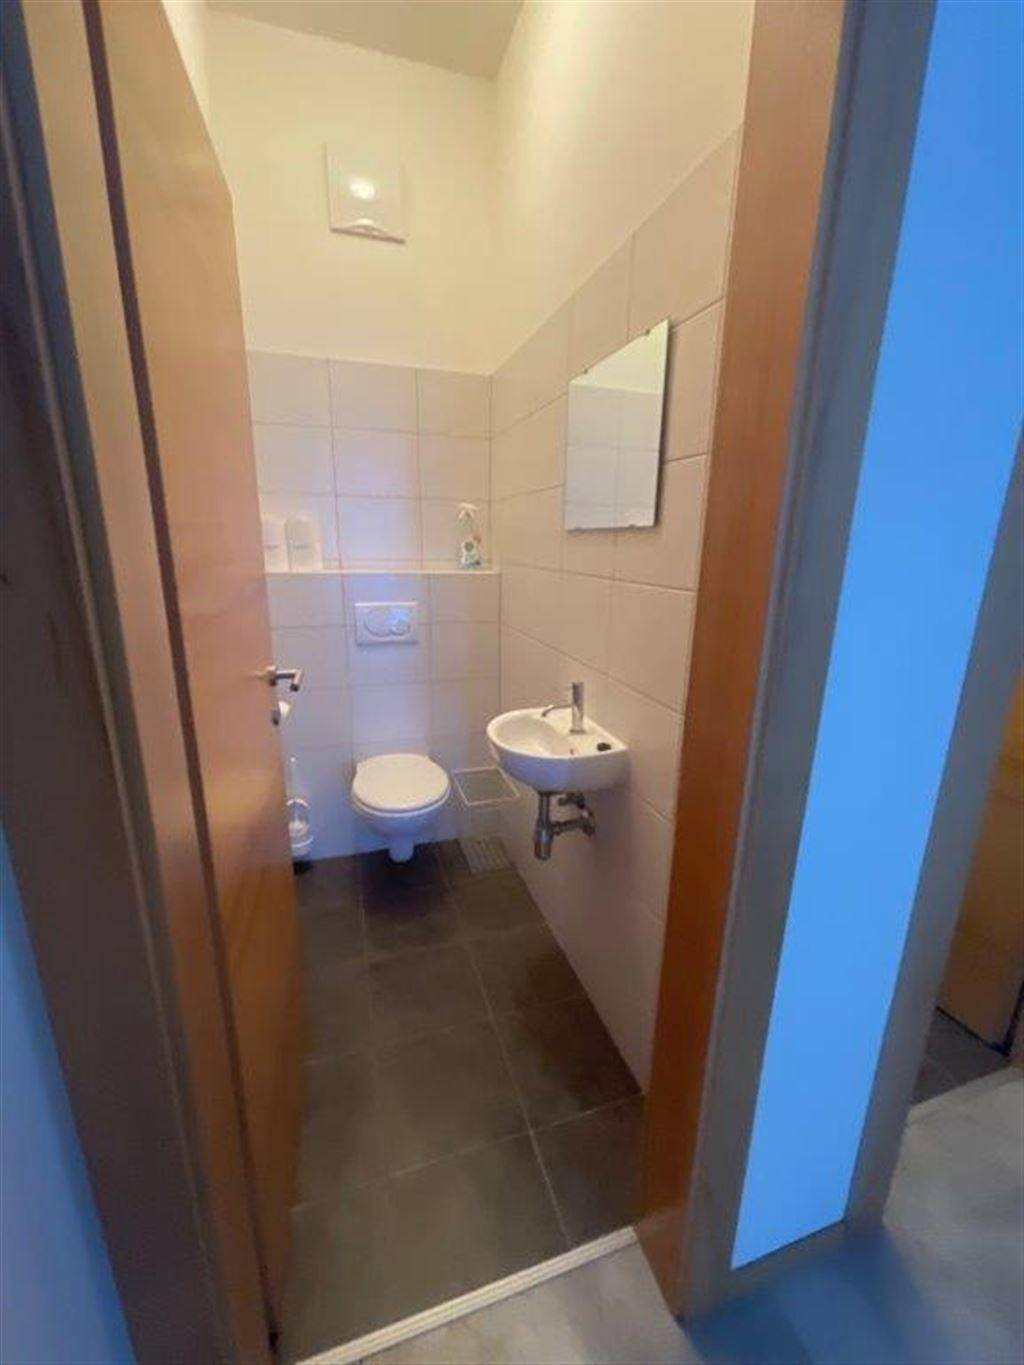 Toilette 1- 1,80m²